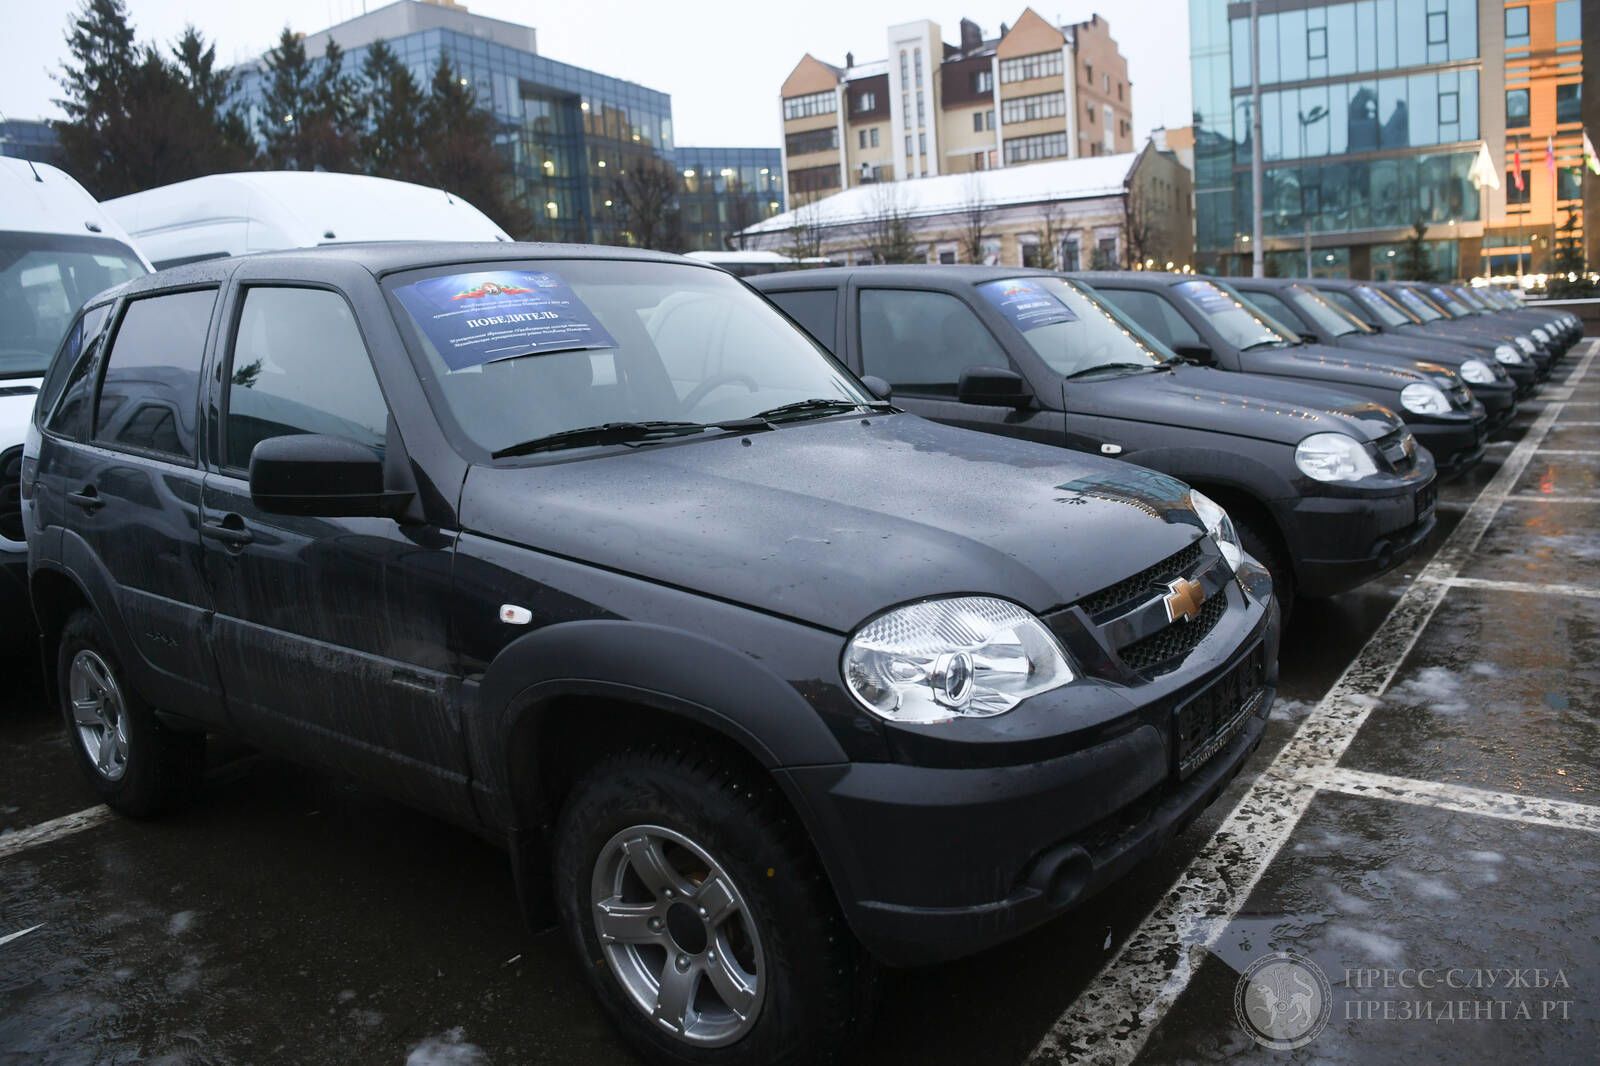 Рустам Минниханов вручил ключи от новых автомобилей трем главам поселений Пестречинского района